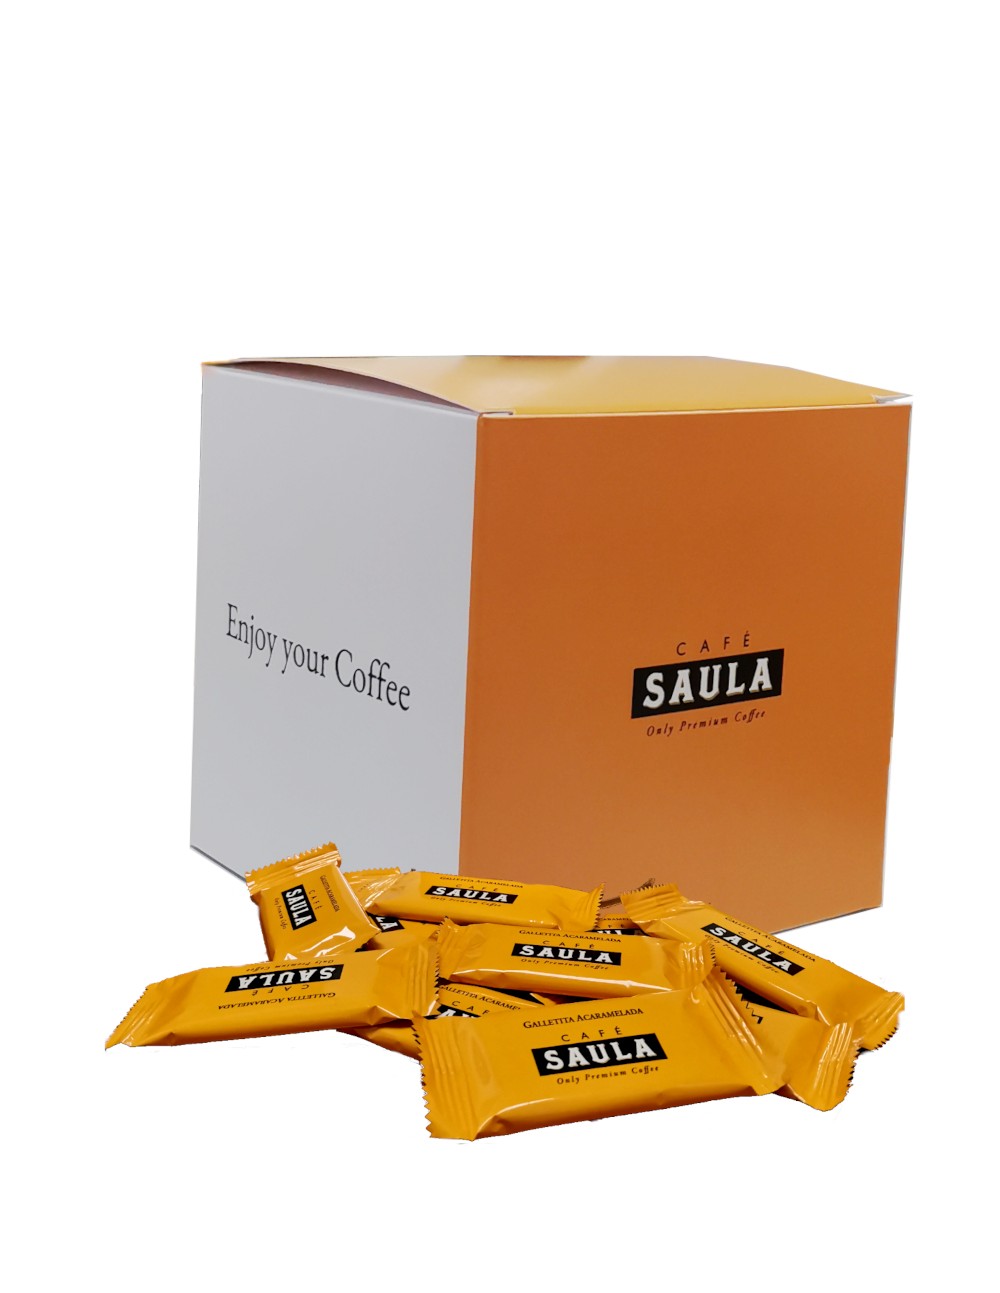 Café Saula, el grano de sabor 'premium